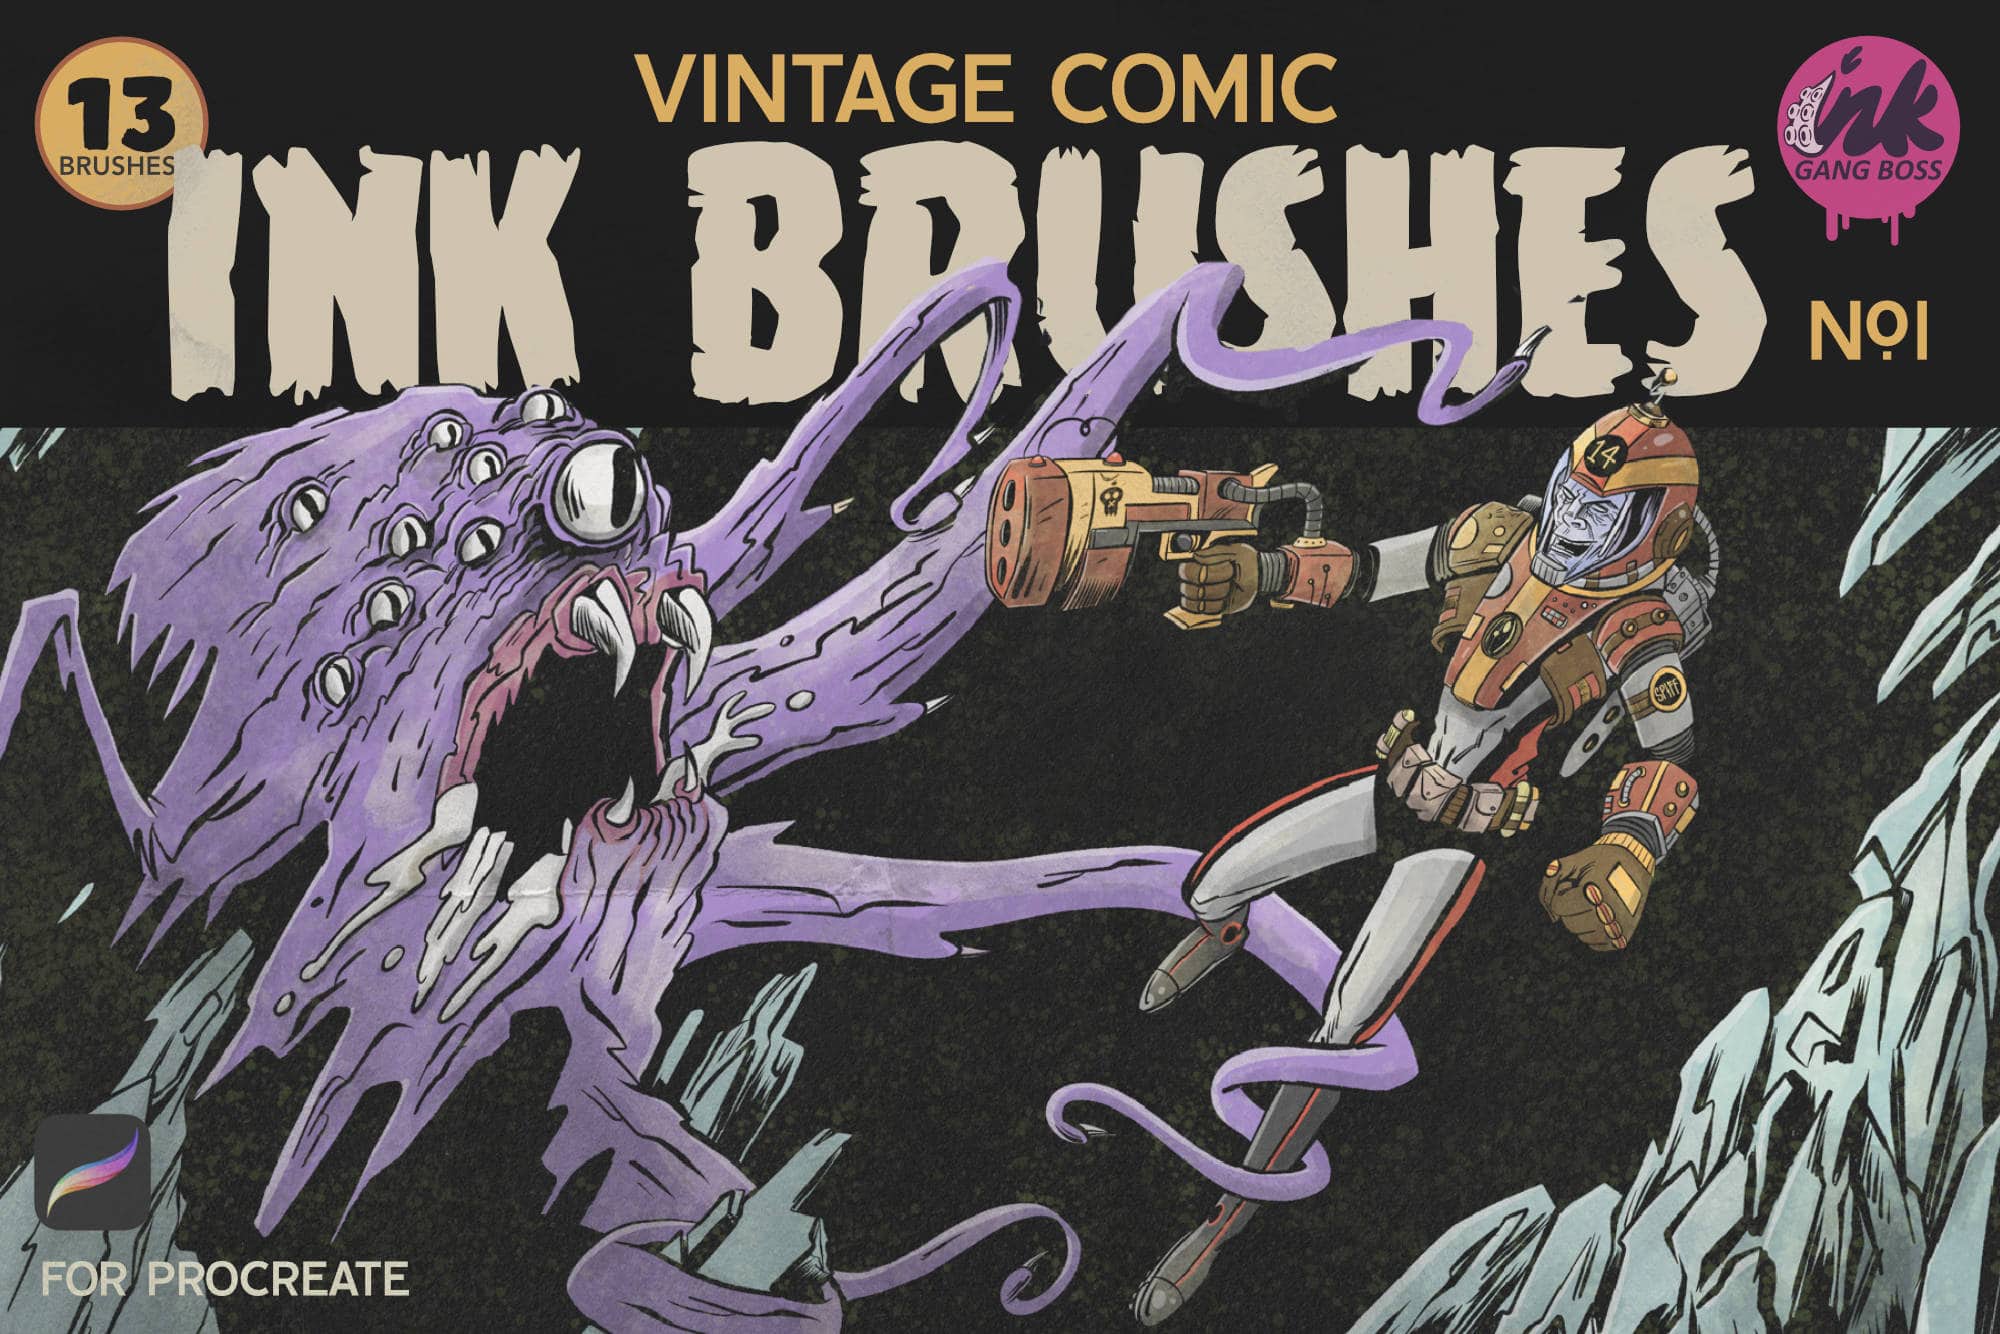 Vintage Comic Ink Brushes